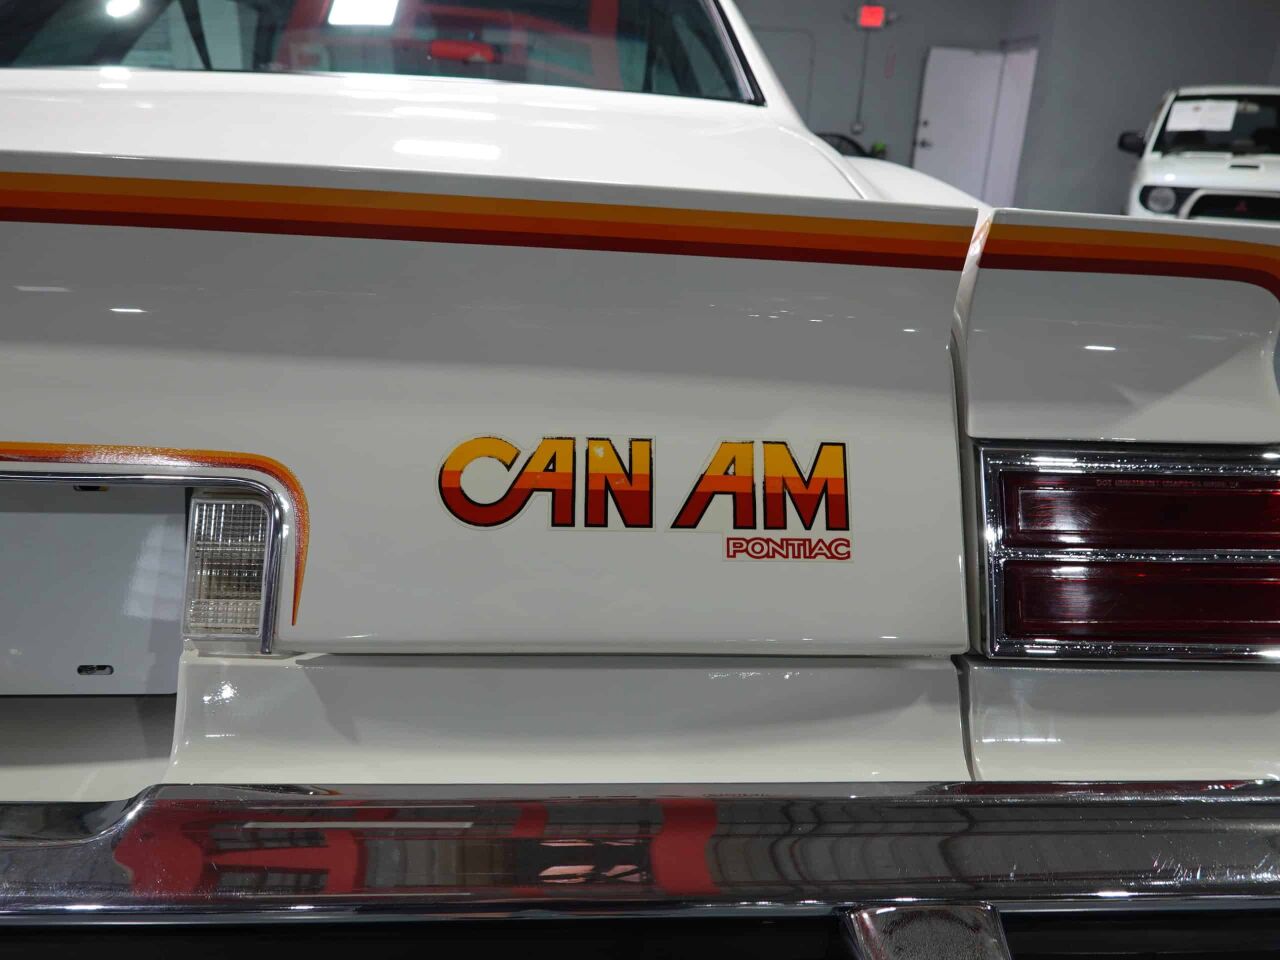 1977 Pontiac Can Am 23